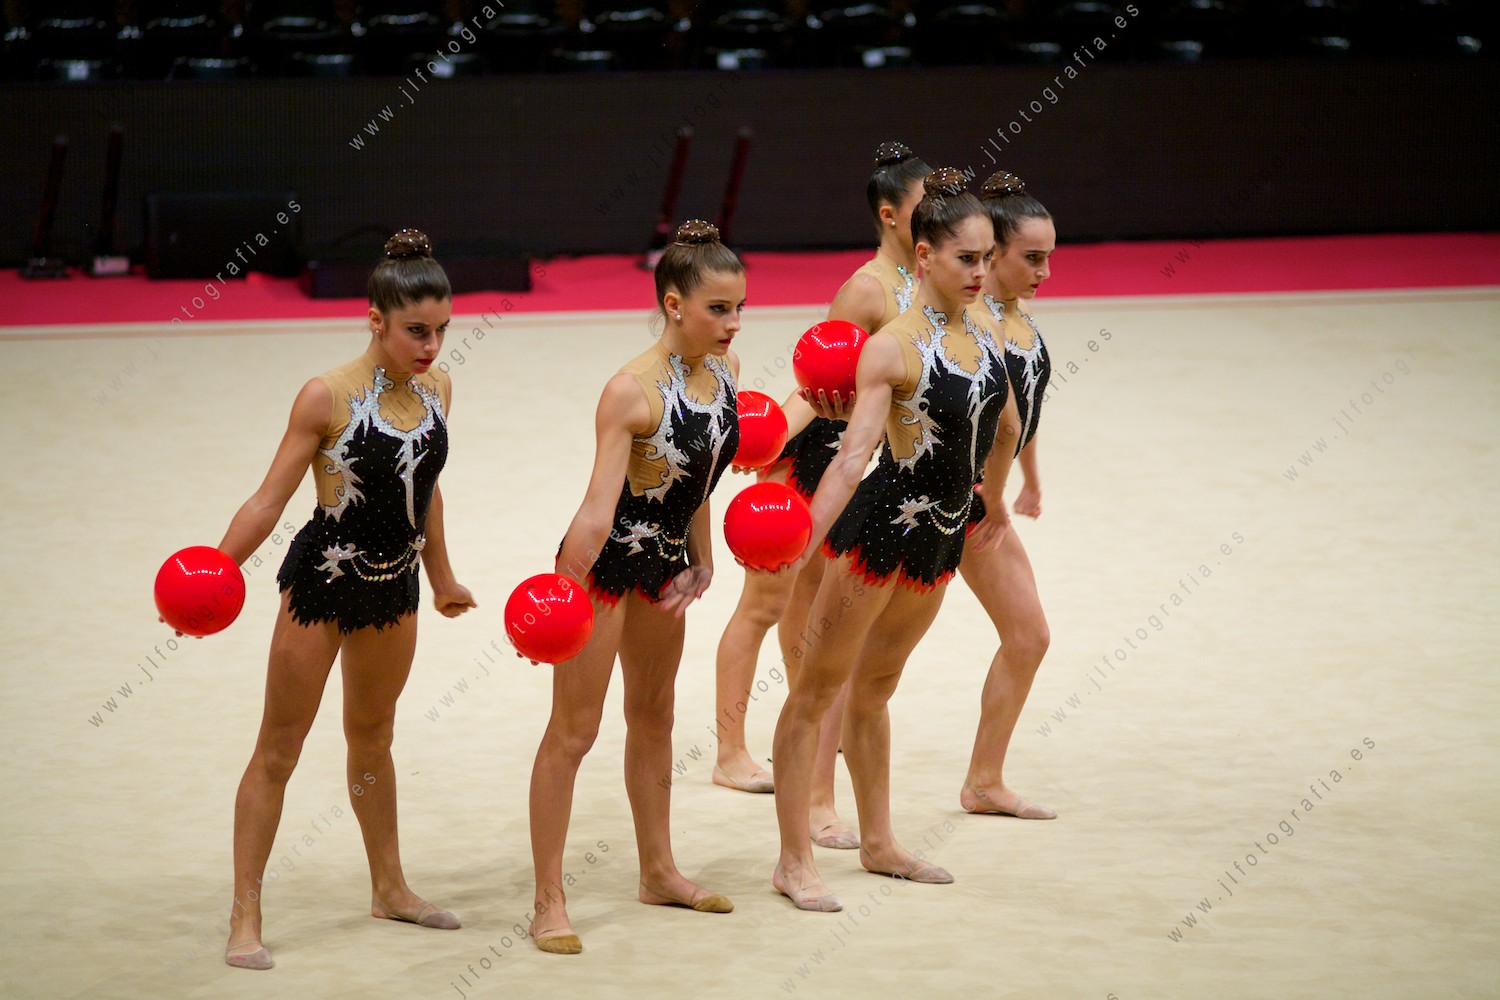 gimnasia por equipos de la gala del Euskalgym 10 de 2015 celebrado en el Fernando Buesa Arena de Vitoria